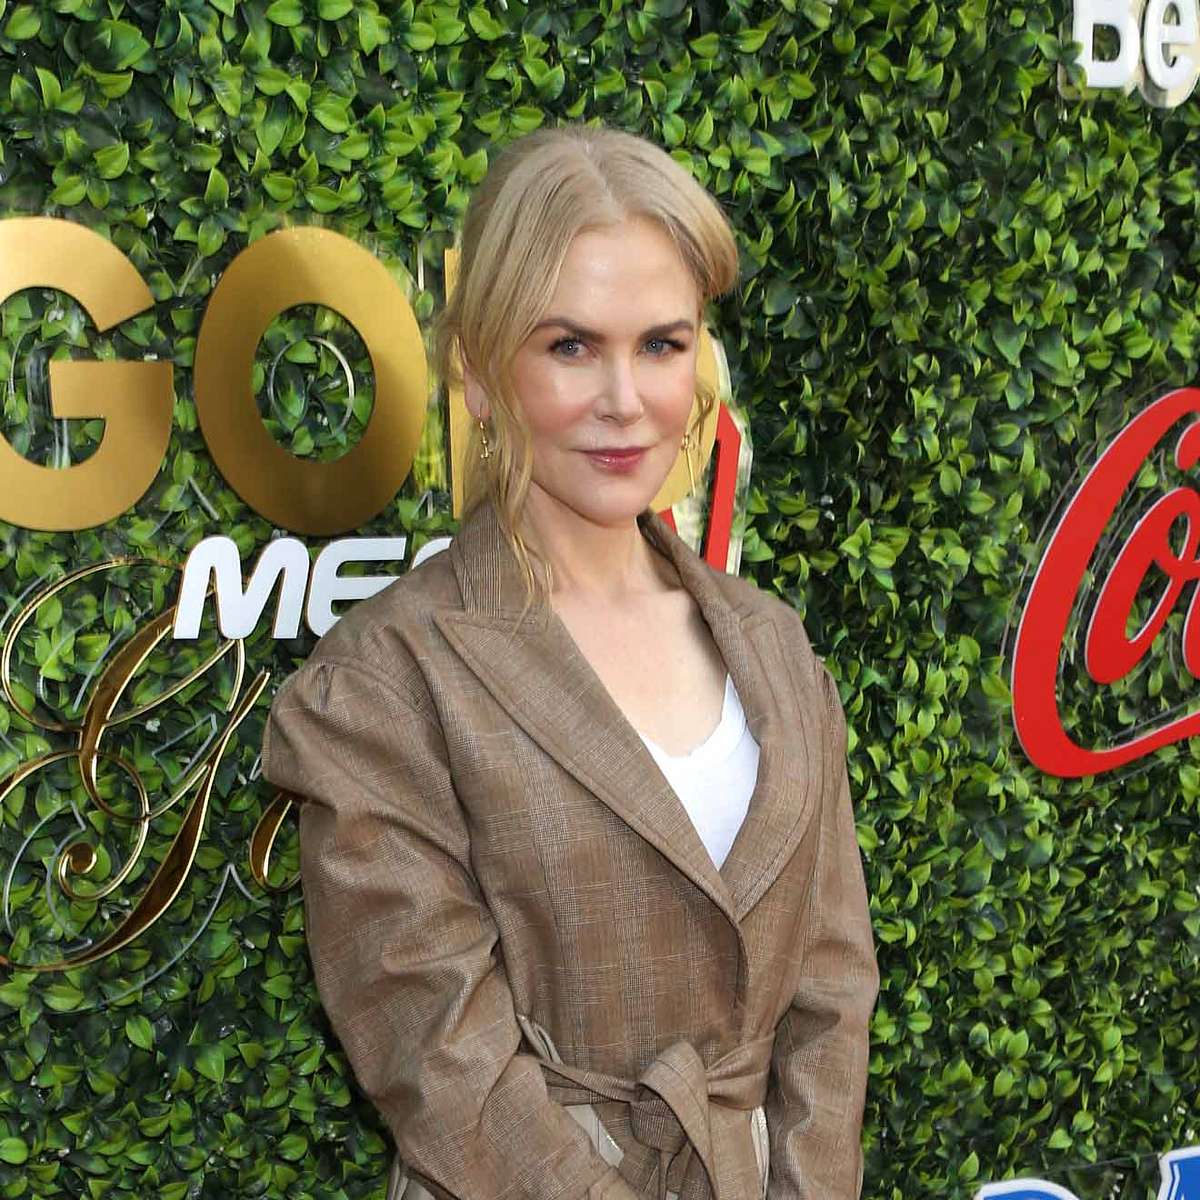 Brände in Australien: So viel Geld haben die Stars gespendet Nicole Kidman